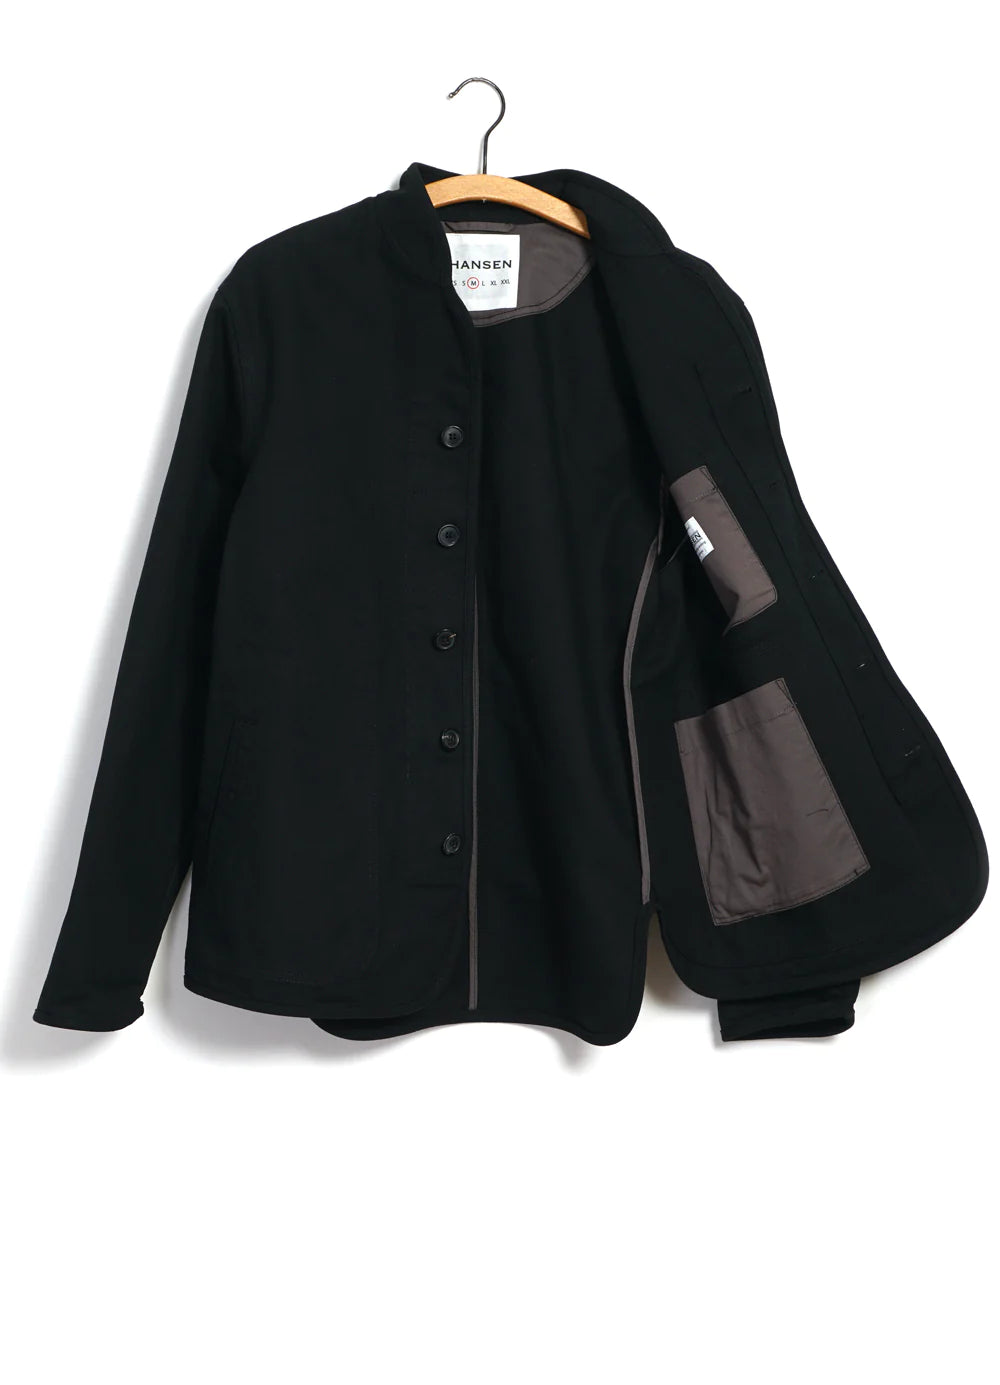 Hansen Garments Erling Canvas Work Jacket in black